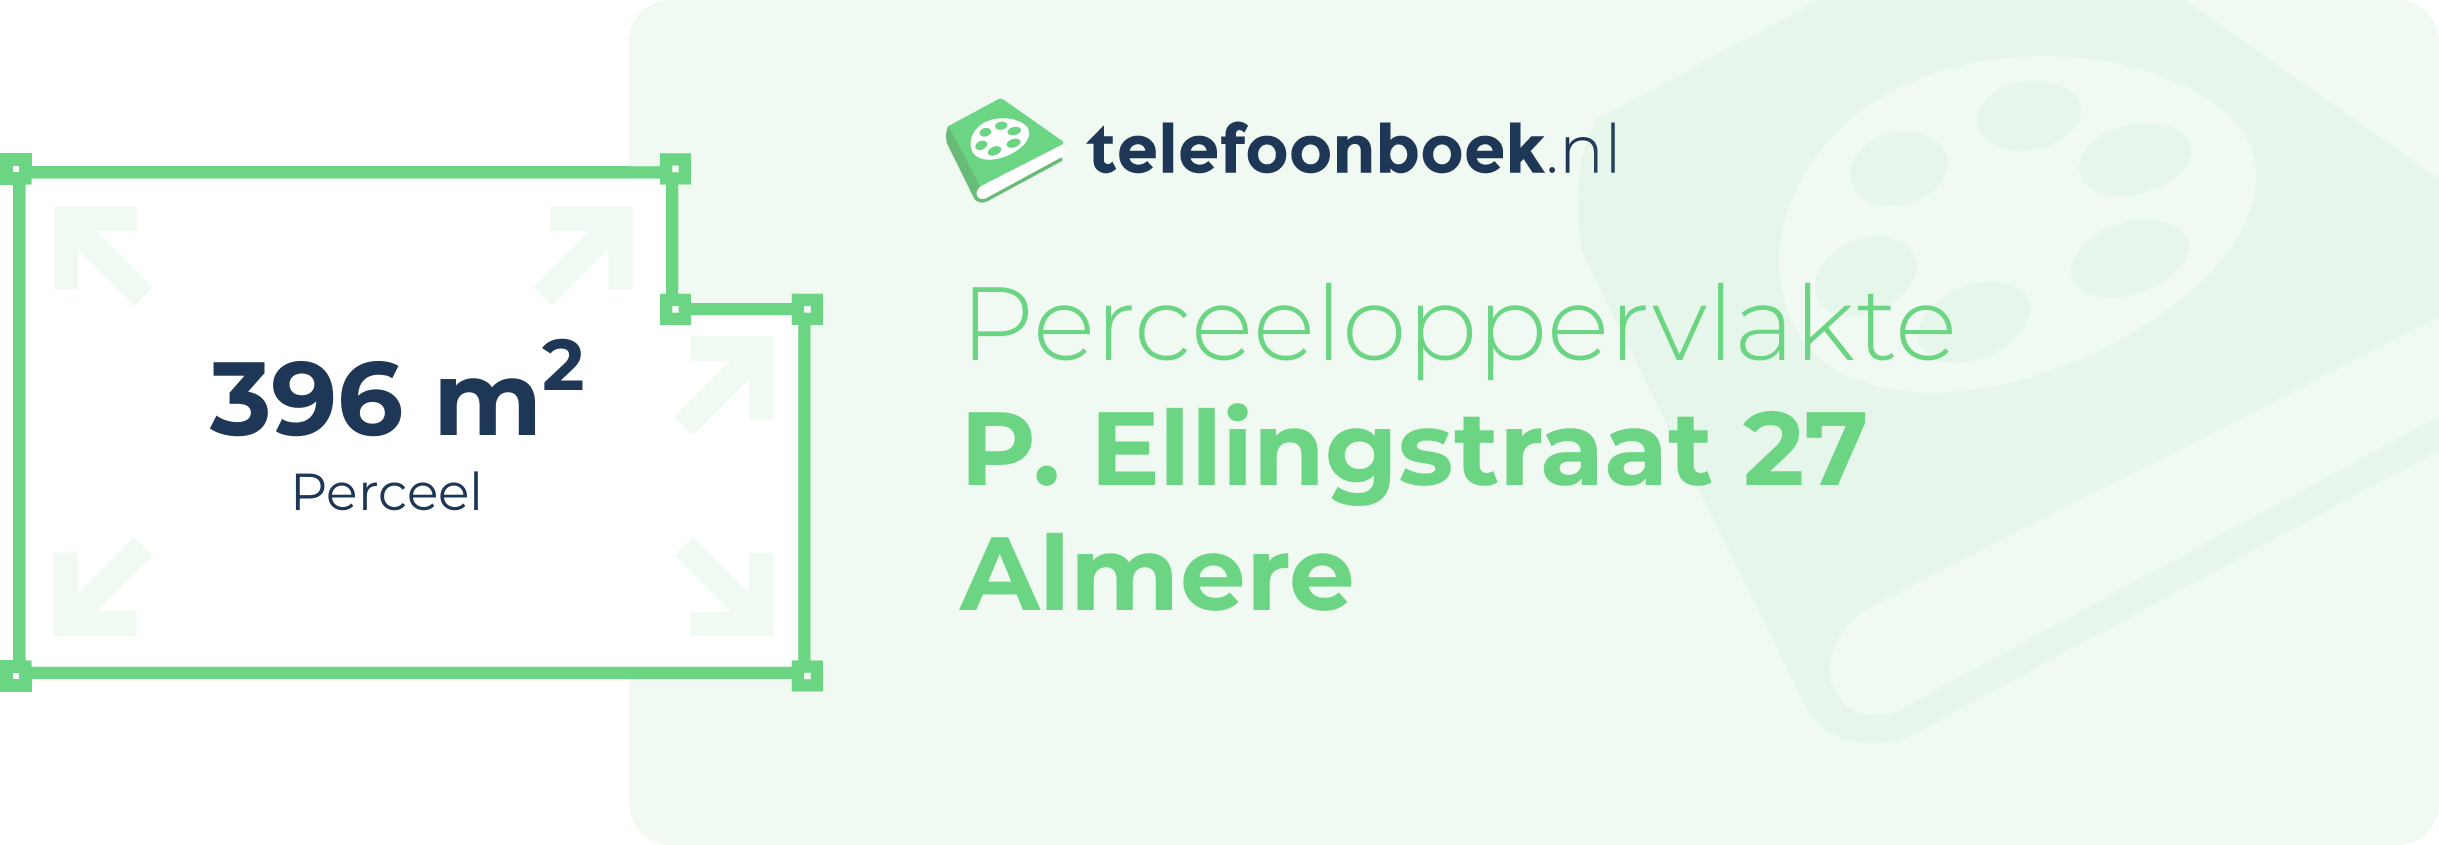 Perceeloppervlakte P. Ellingstraat 27 Almere